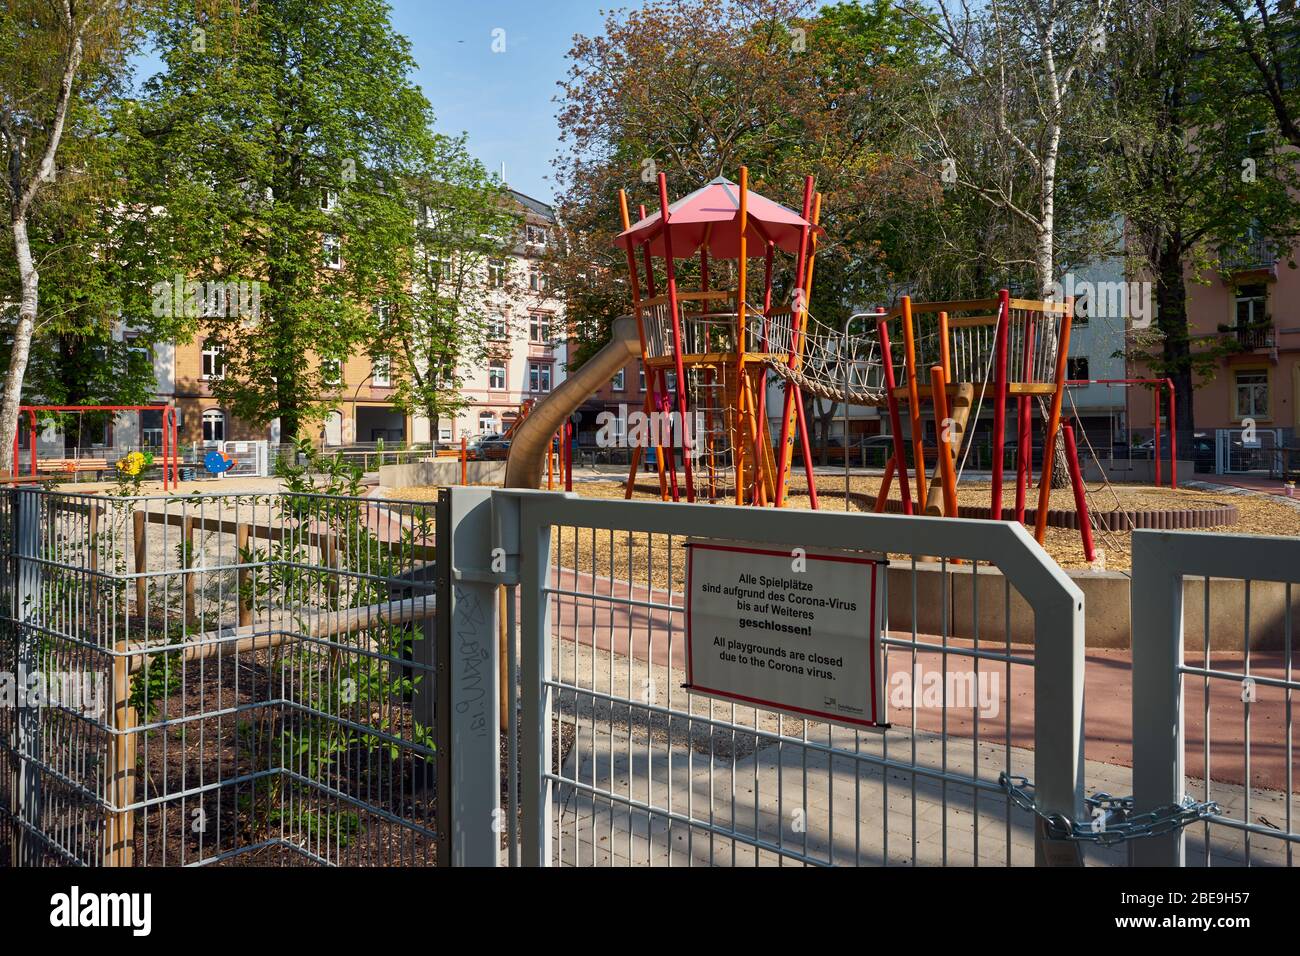 Spielplatz, wegen dem Coronavius geschlossen, Bockenheim, Francoforte sul meno, Deutschland Foto Stock